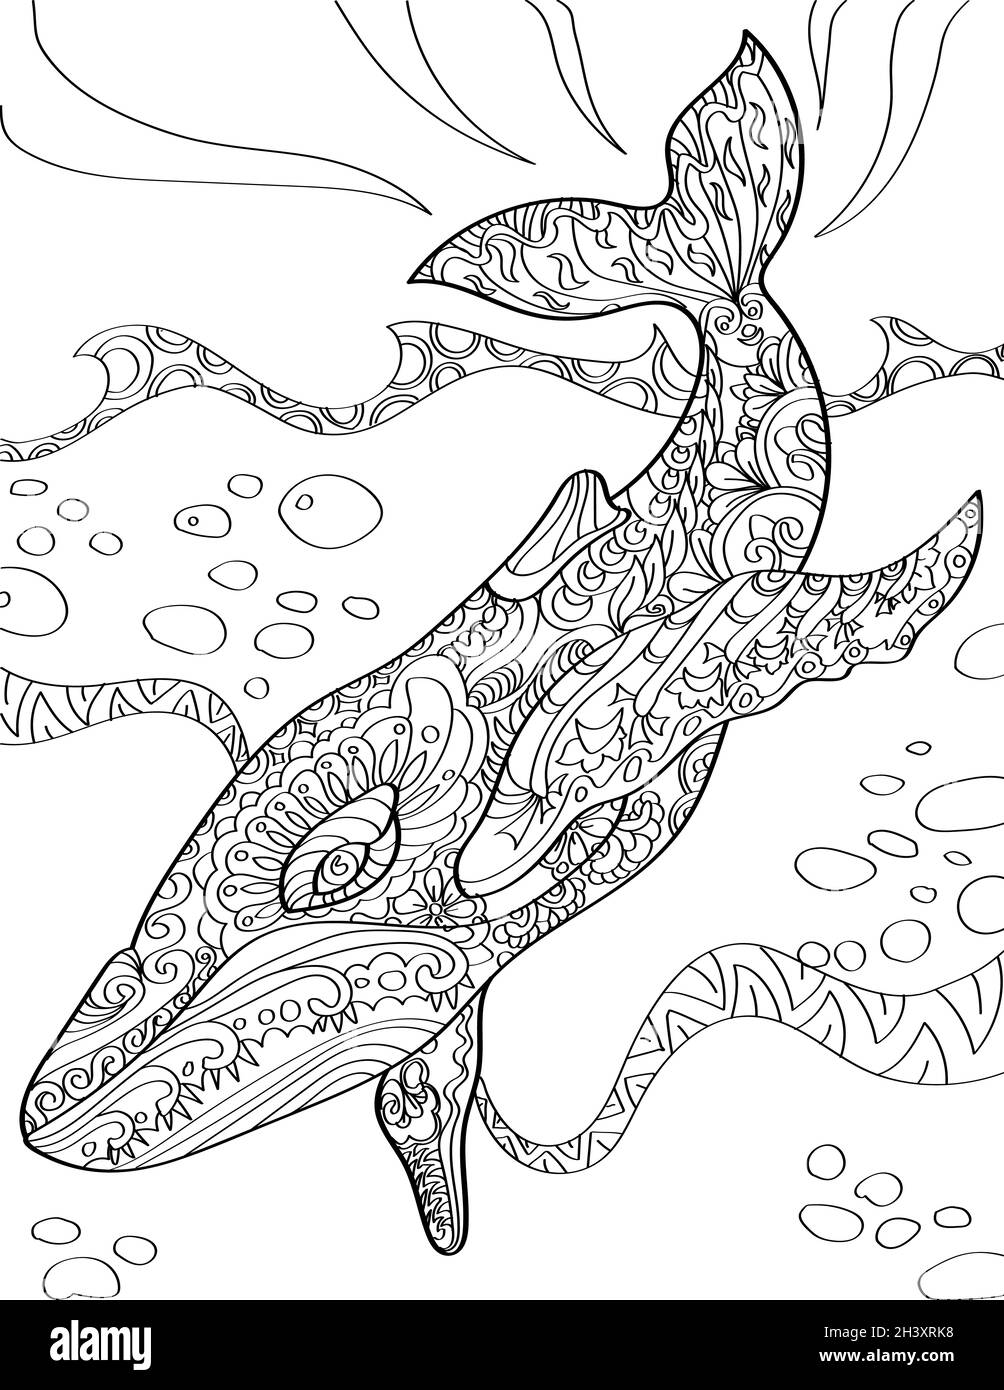 Großer Wal, Der Tief Ins Meer Eintauchen Farblose Linienzeichnung. Riesige Aquatische Kreatur Taucht Unter Dem Ozean Mit Big Waves Coloring Boo Stockfoto